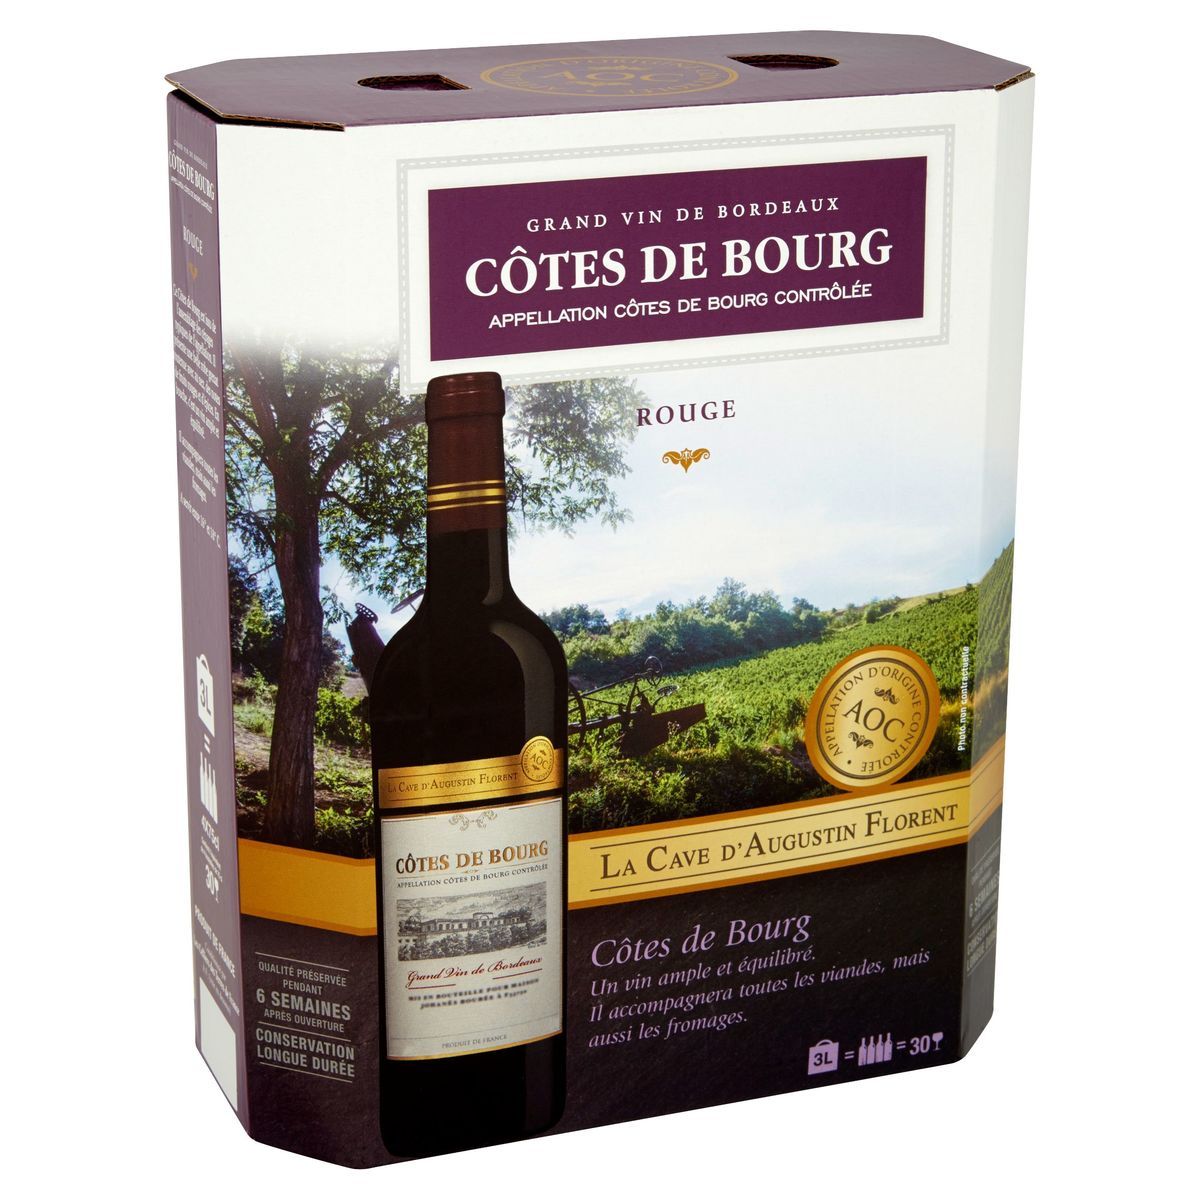 La Cave d'Augustin Florent Côtes de Bourg Grand vin Bordeaux rouge 3 L